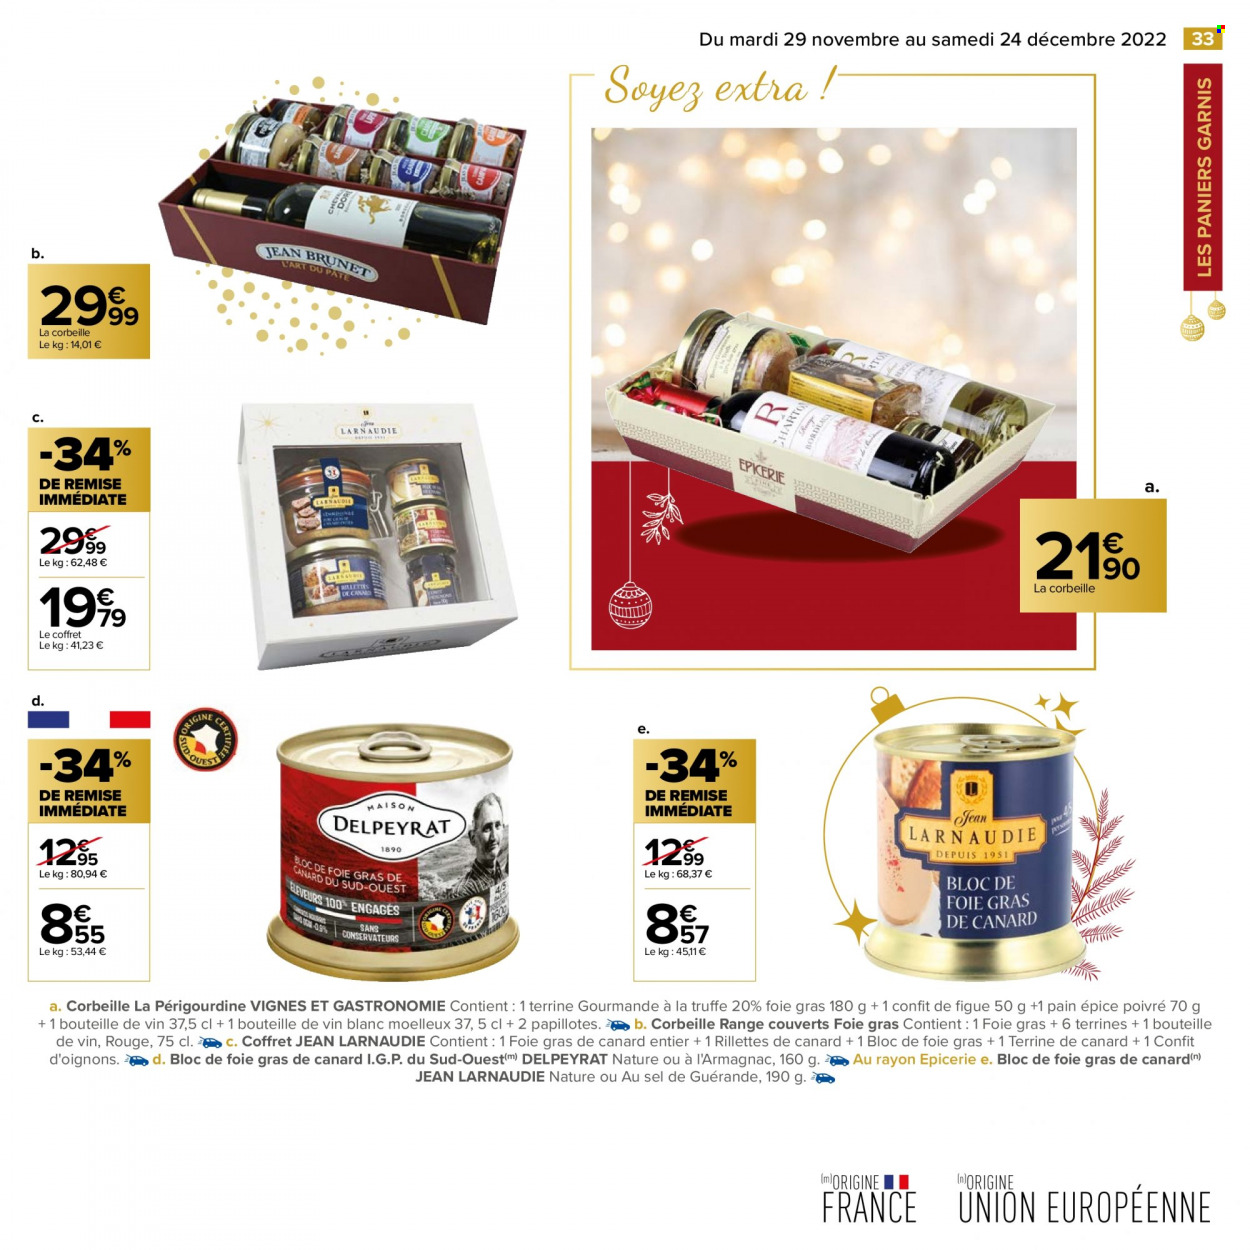 thumbnail - Catalogue Carrefour Hypermarchés - 29/11/2022 - 24/12/2022 - Produits soldés - oignons, pain, rillettes, terrine, rillettes de canard, papillotes, corbeille, couverts, jeans. Page 33.